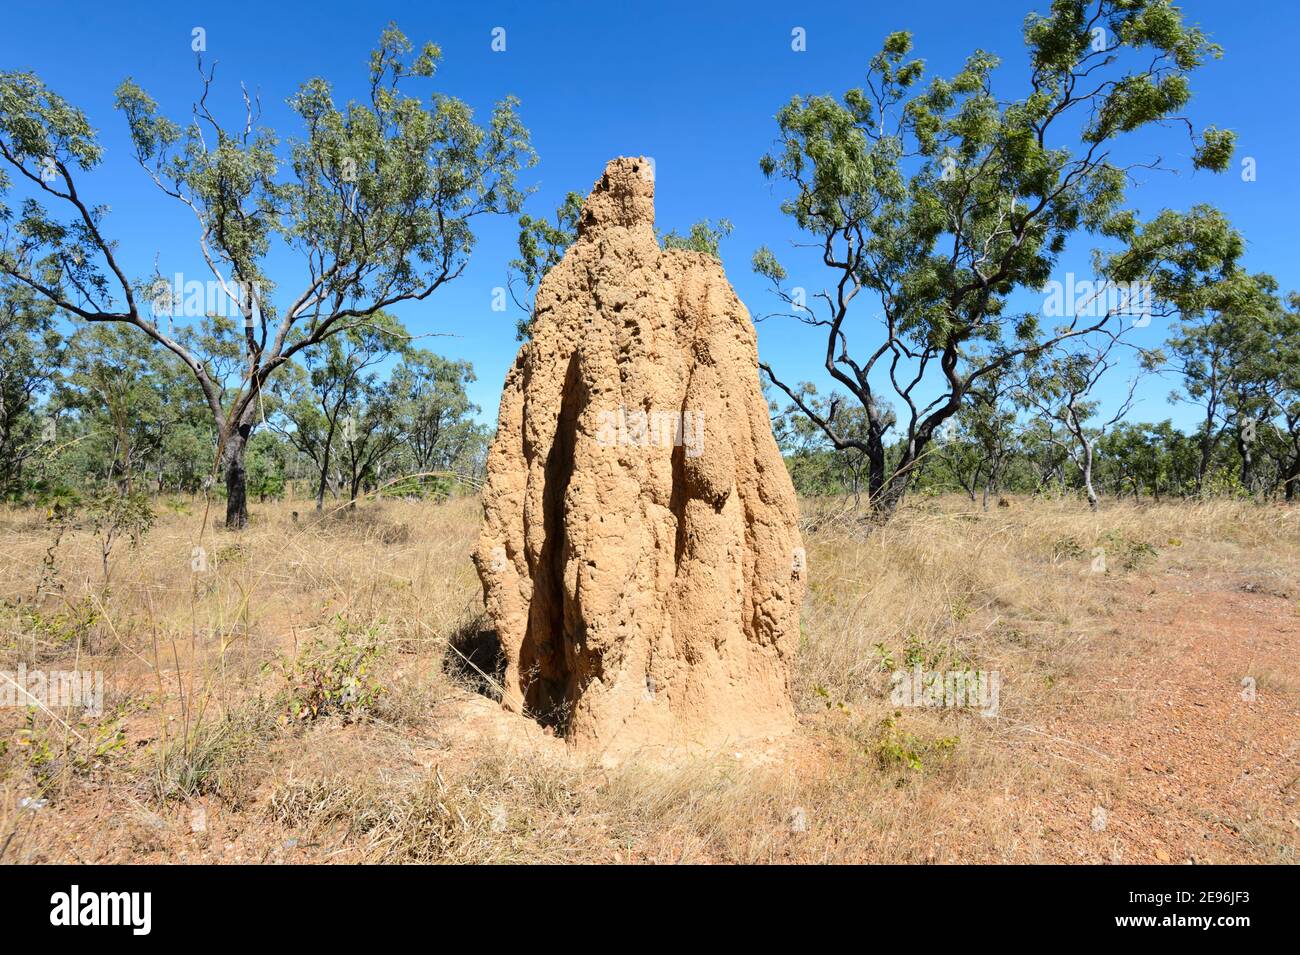 Tall Termite monte dans la savane, territoire du Nord, territoire du Nord, Australie Banque D'Images